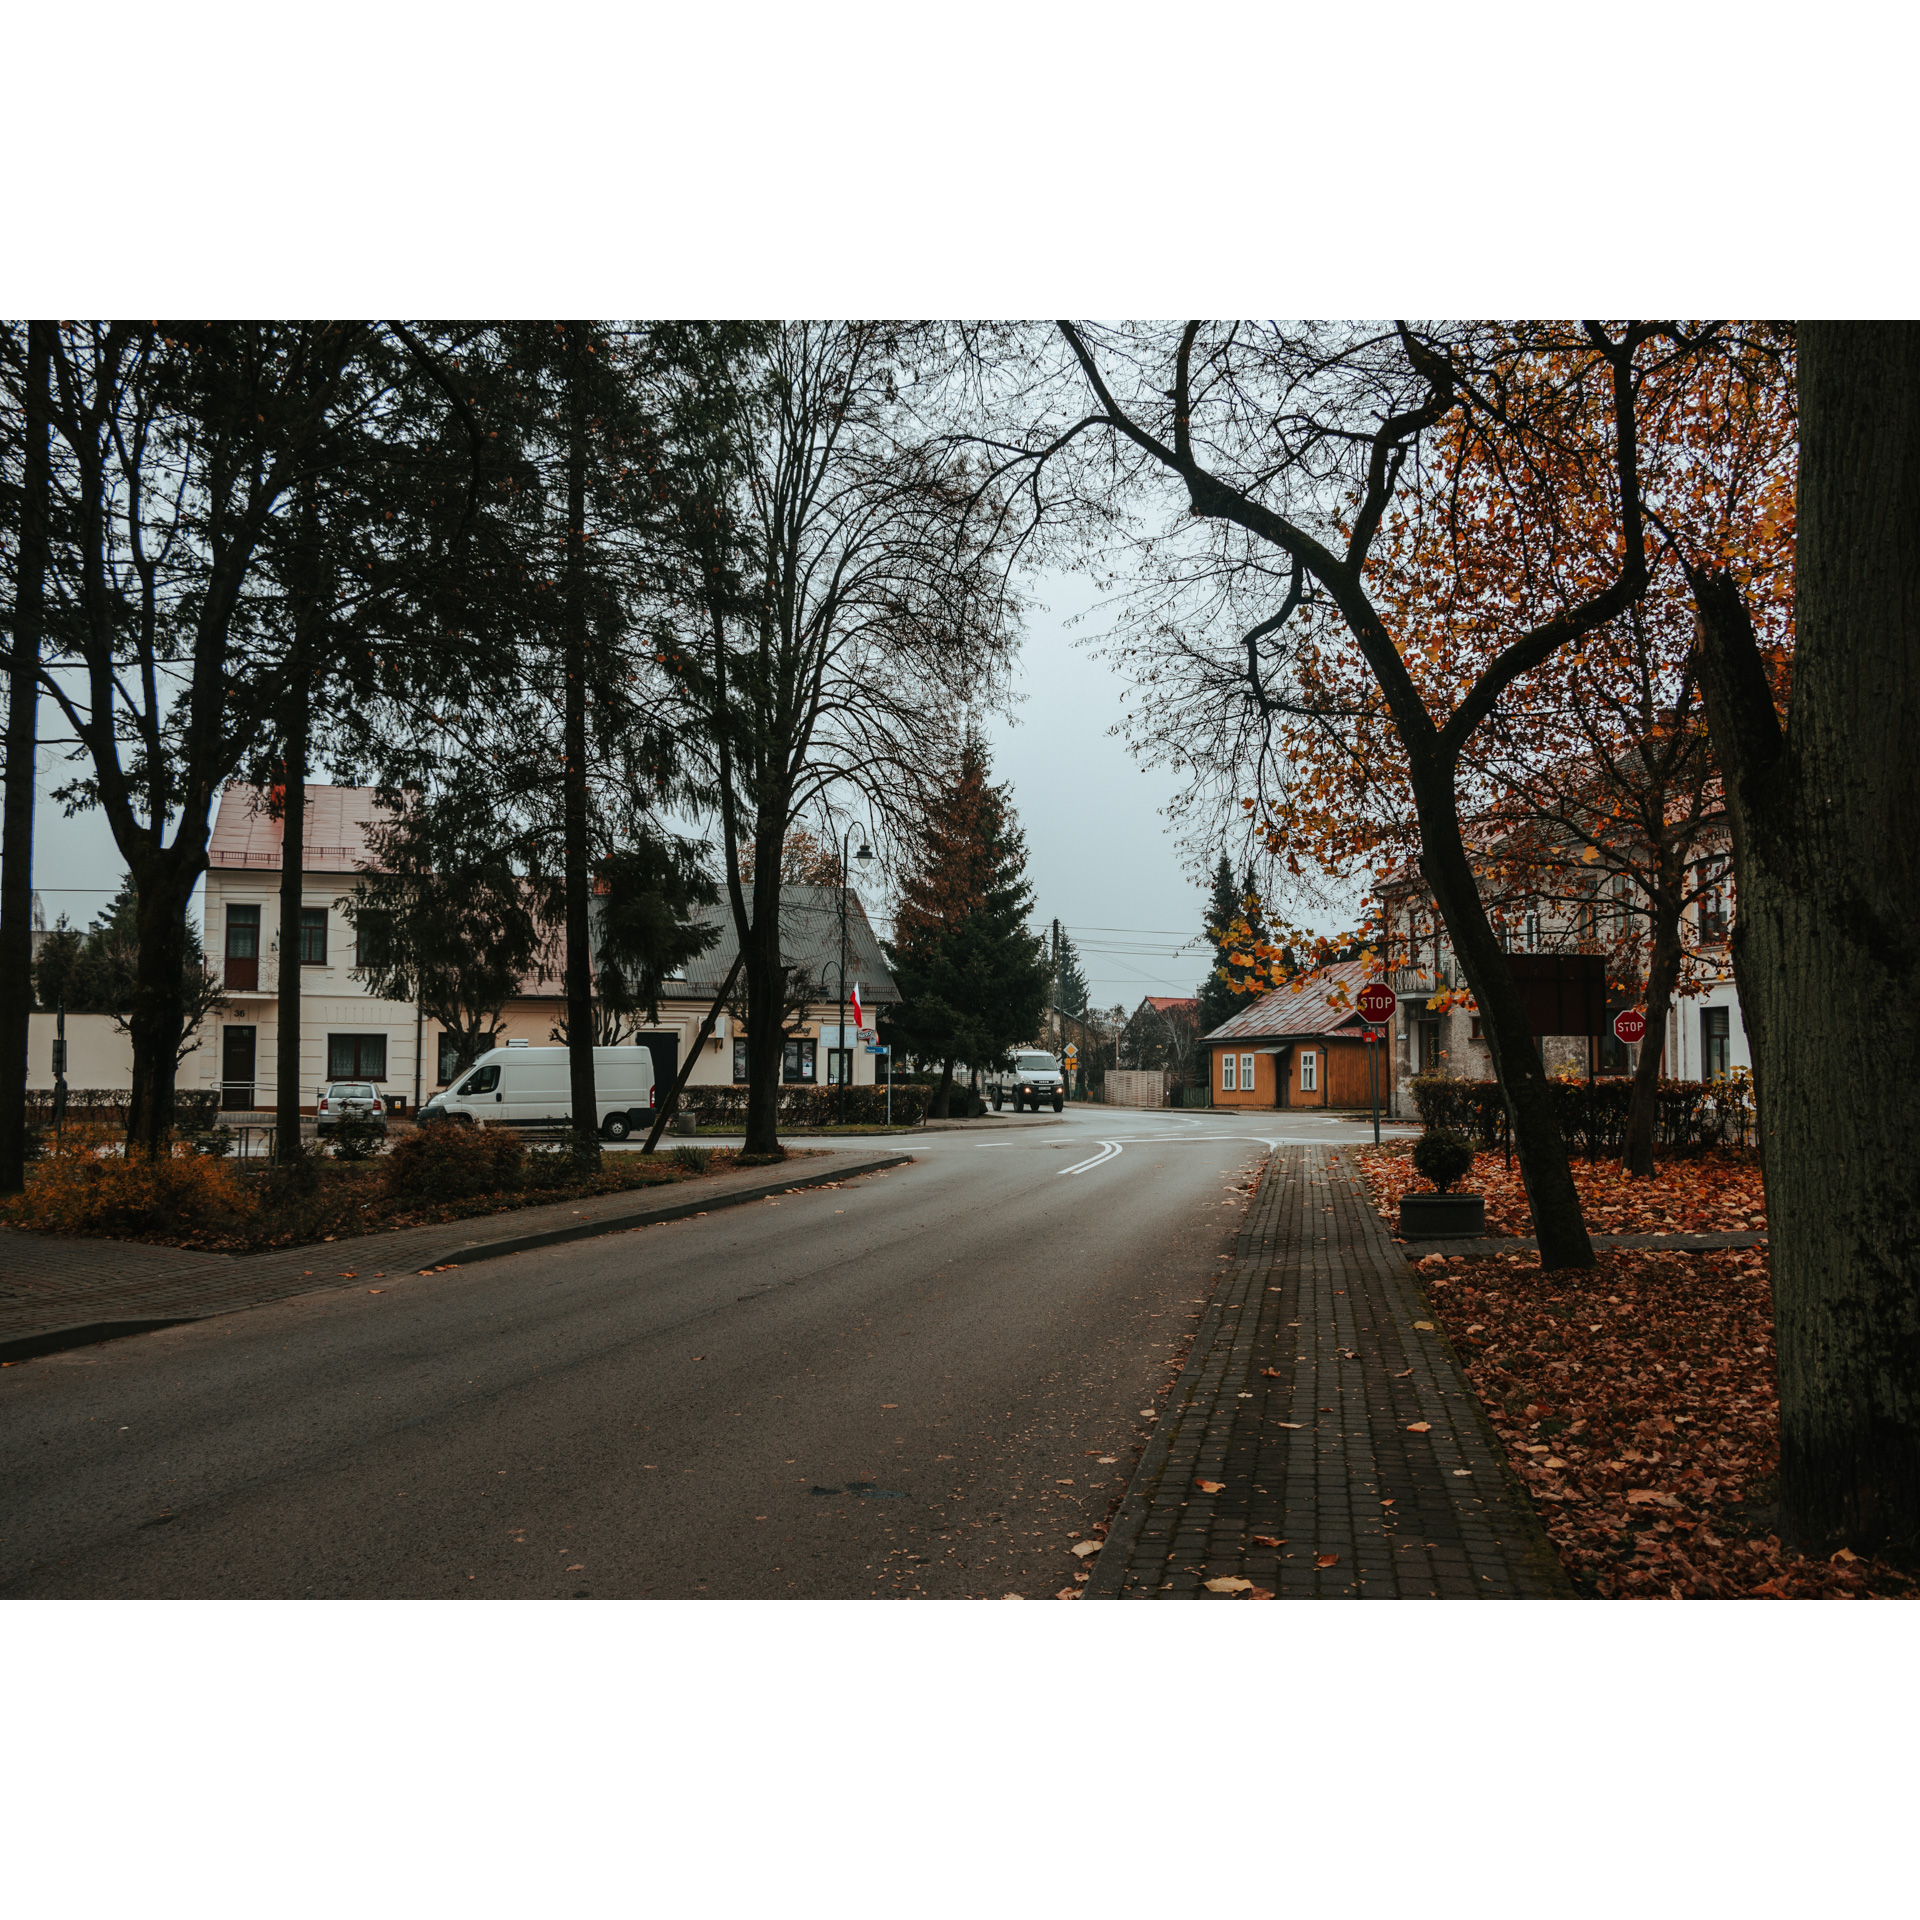 Asfaltowa alejka między drzewami prowadząca do skrzyżowania, na poboczu chodnik i brązowe liście, w tle budynki i samochody